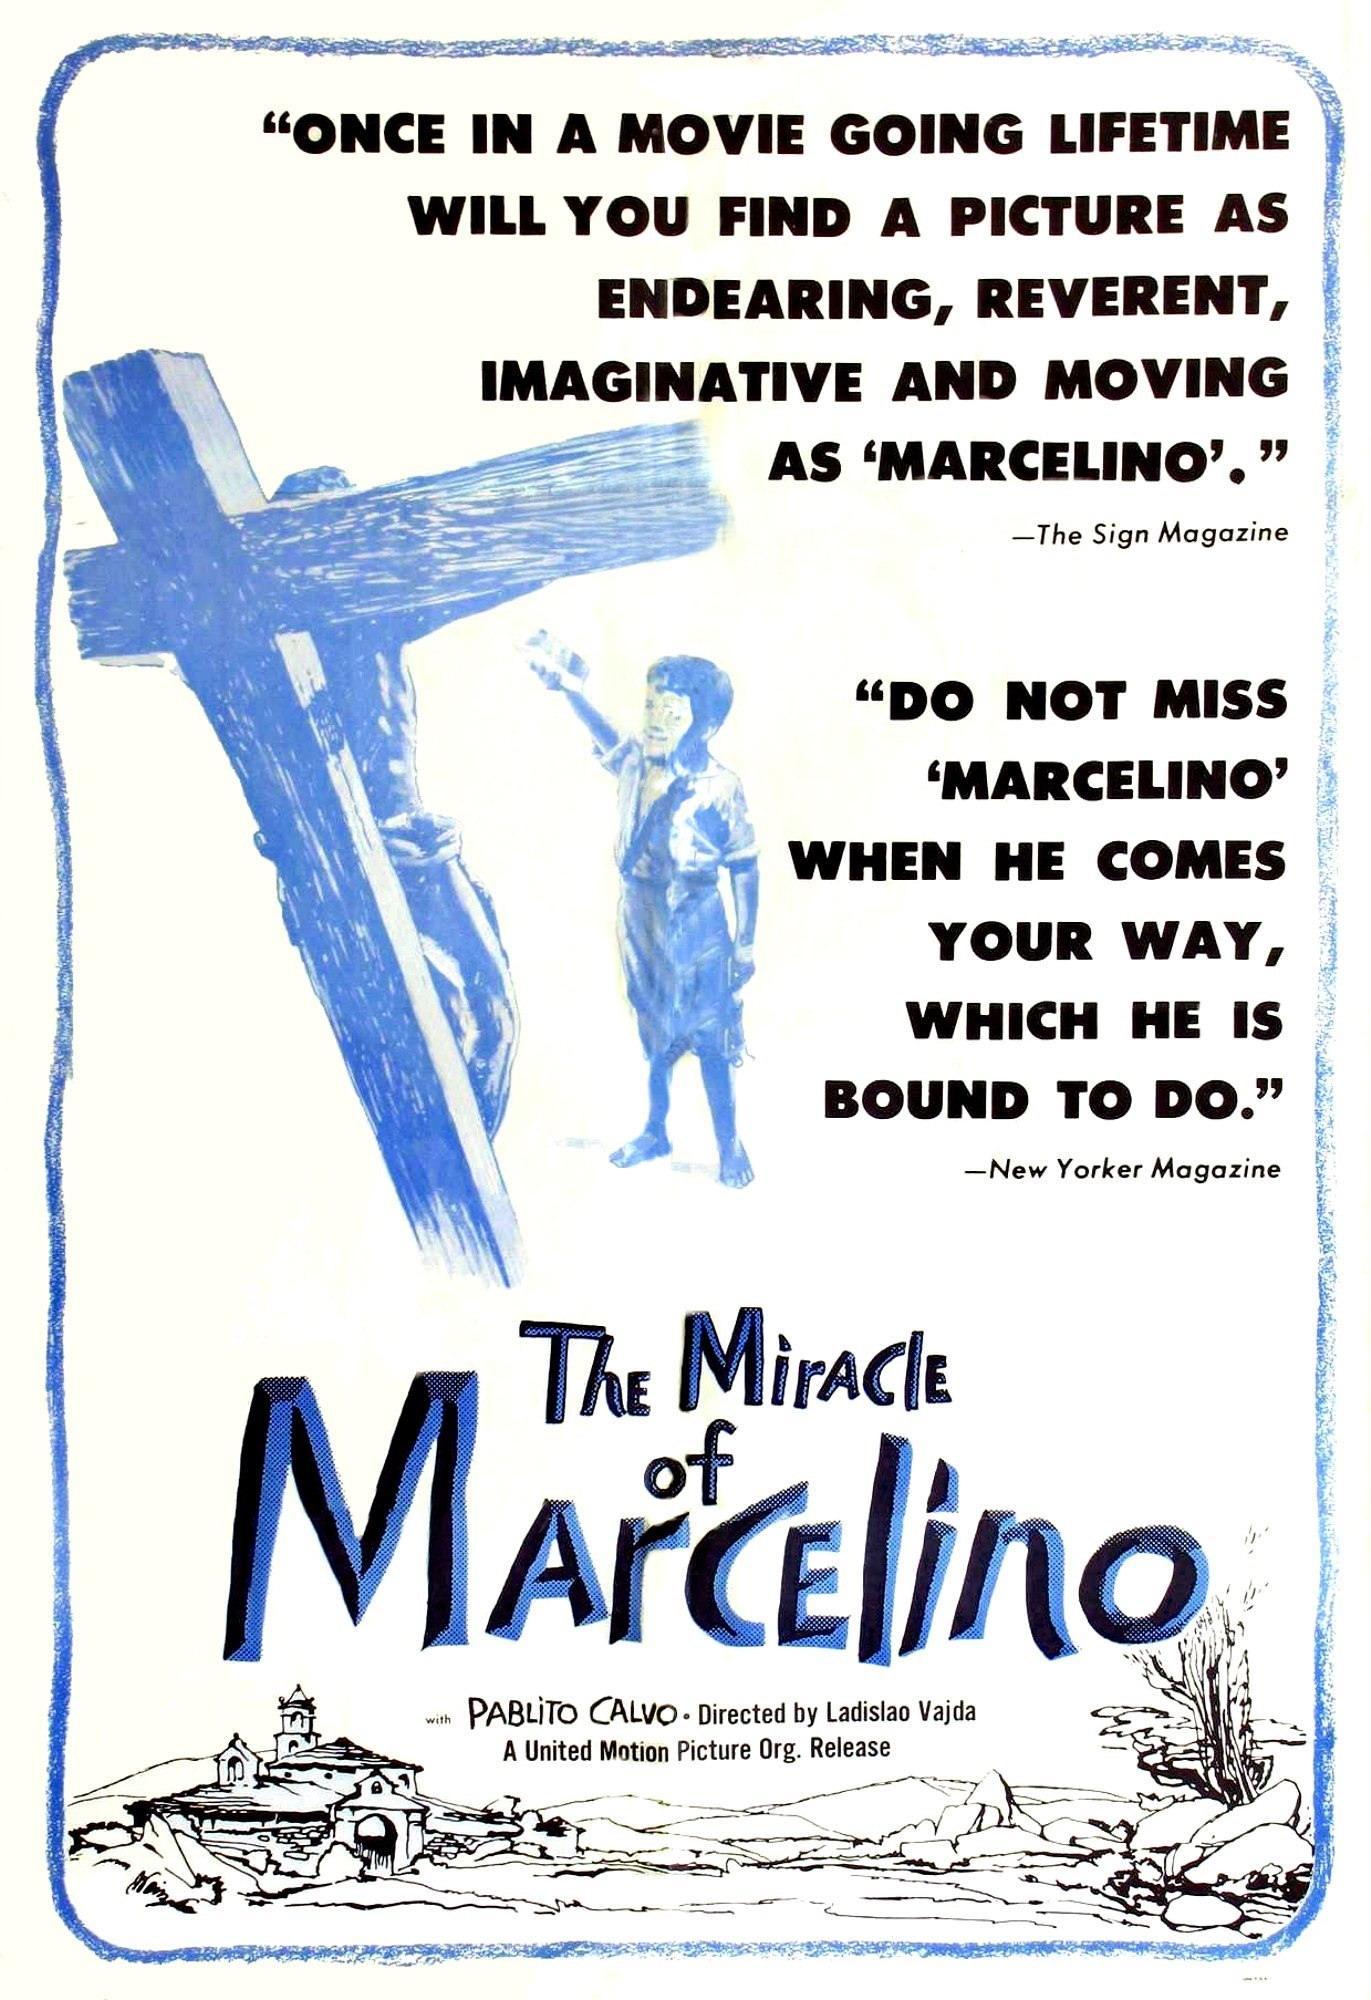 Постер фильма Марселино, хлеб и вино | Marcelino pan y vino